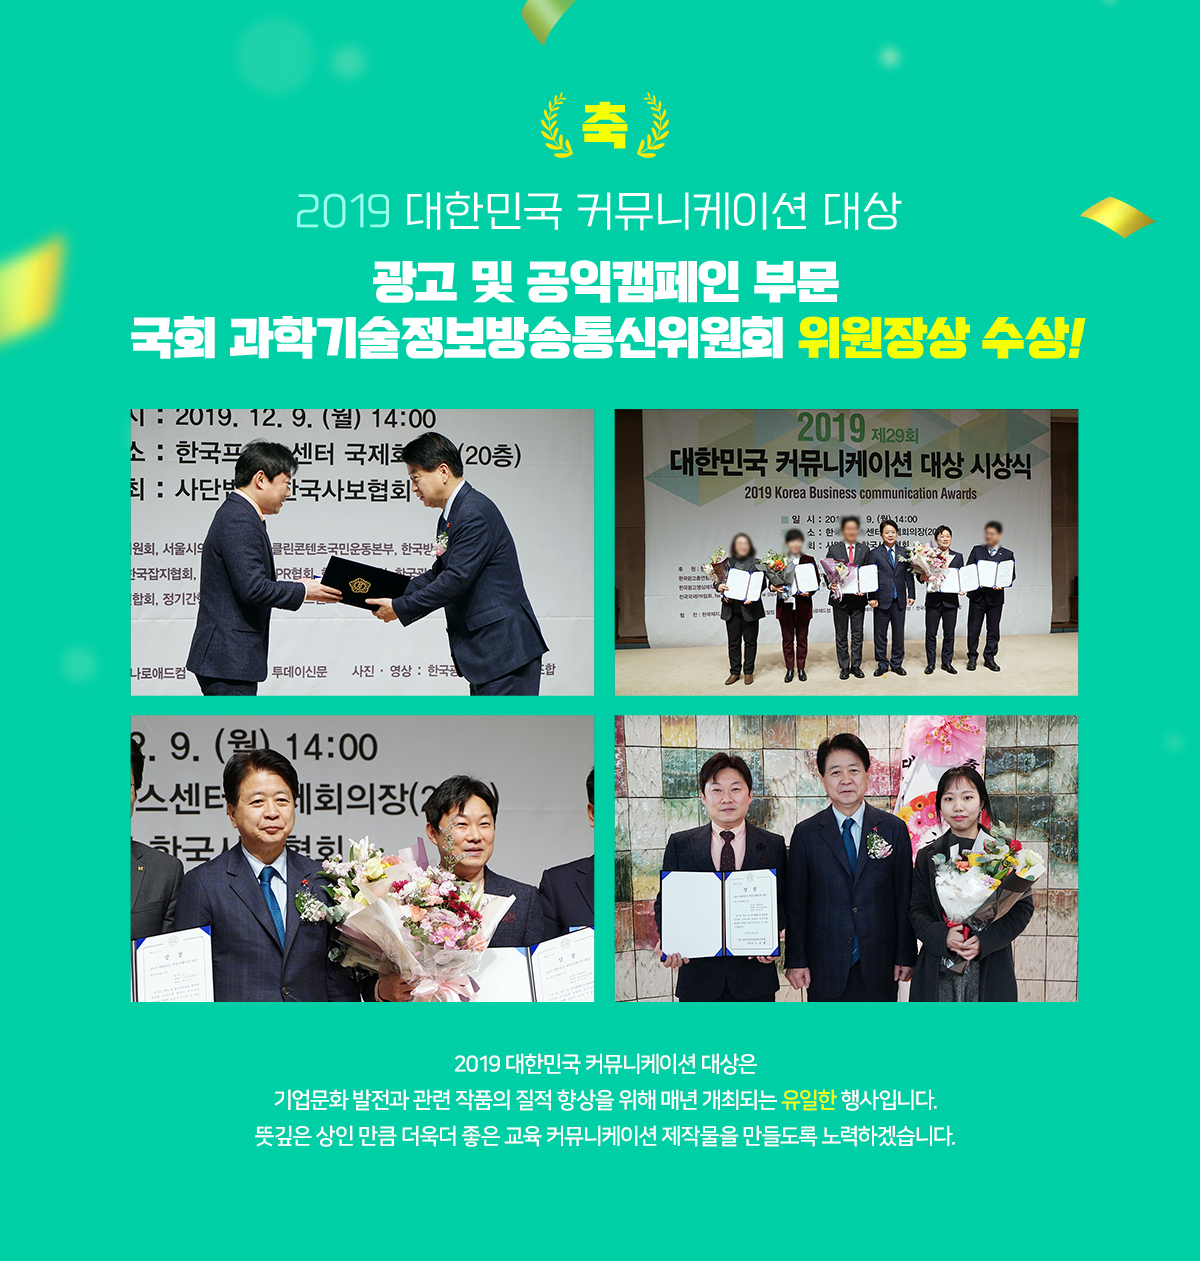 인정받은 요즘 애들의 요즘  공부법 밀크T 2019 대한민국 커뮤니케이션 대상 위원장상 수상 